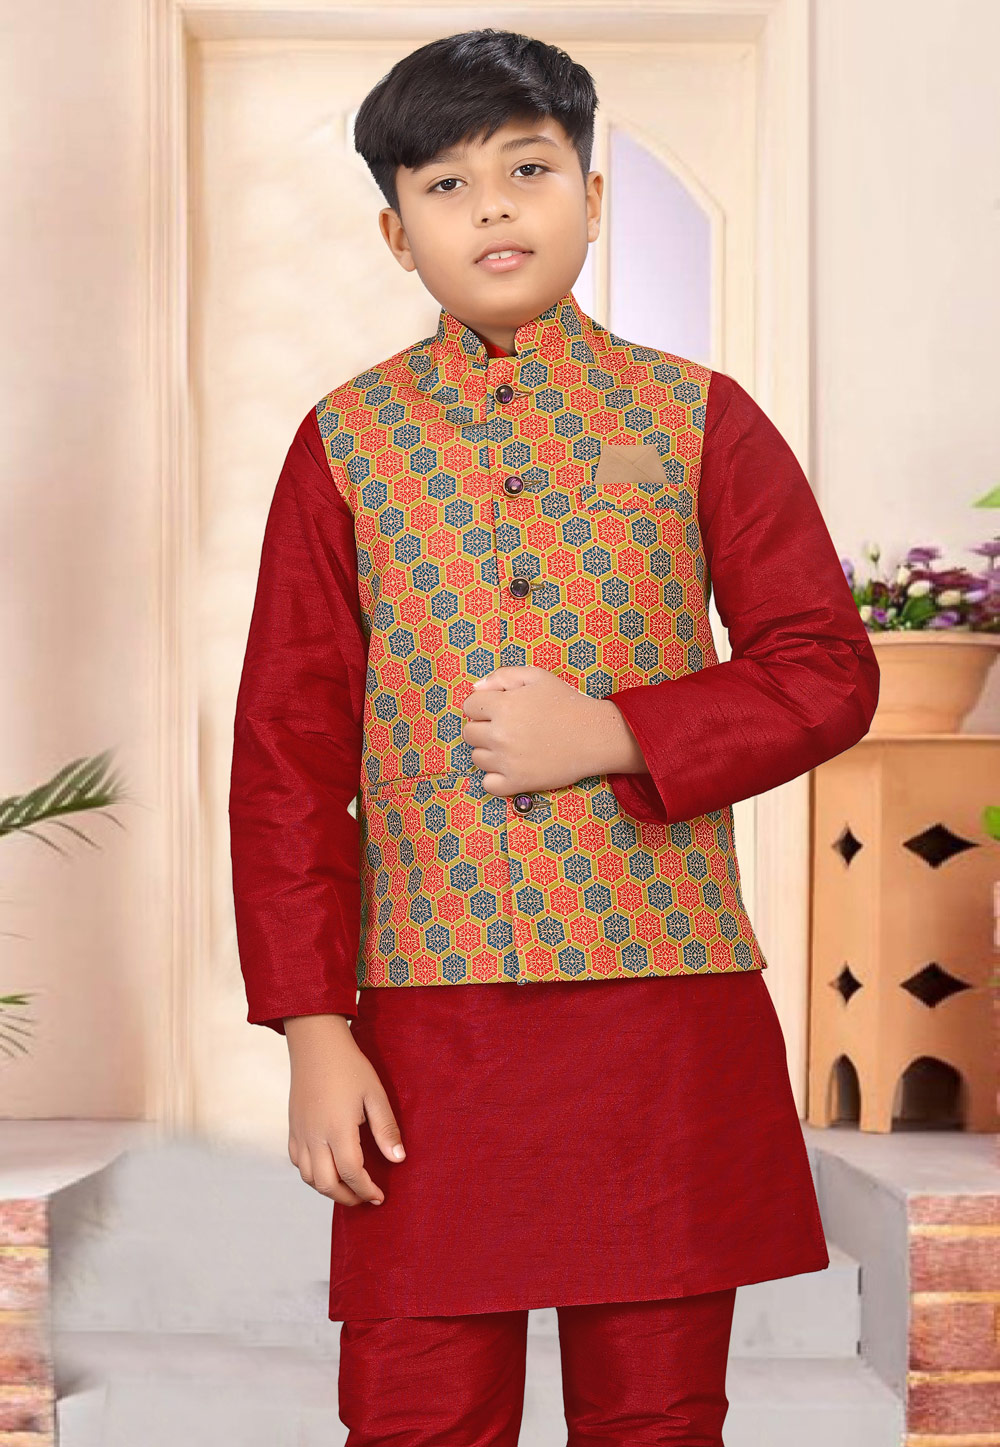 Readymade Designer Boys Kurta Pajama Indian Kids Dress 7395 | Kids kurta,  Kids dress, Boys kurta